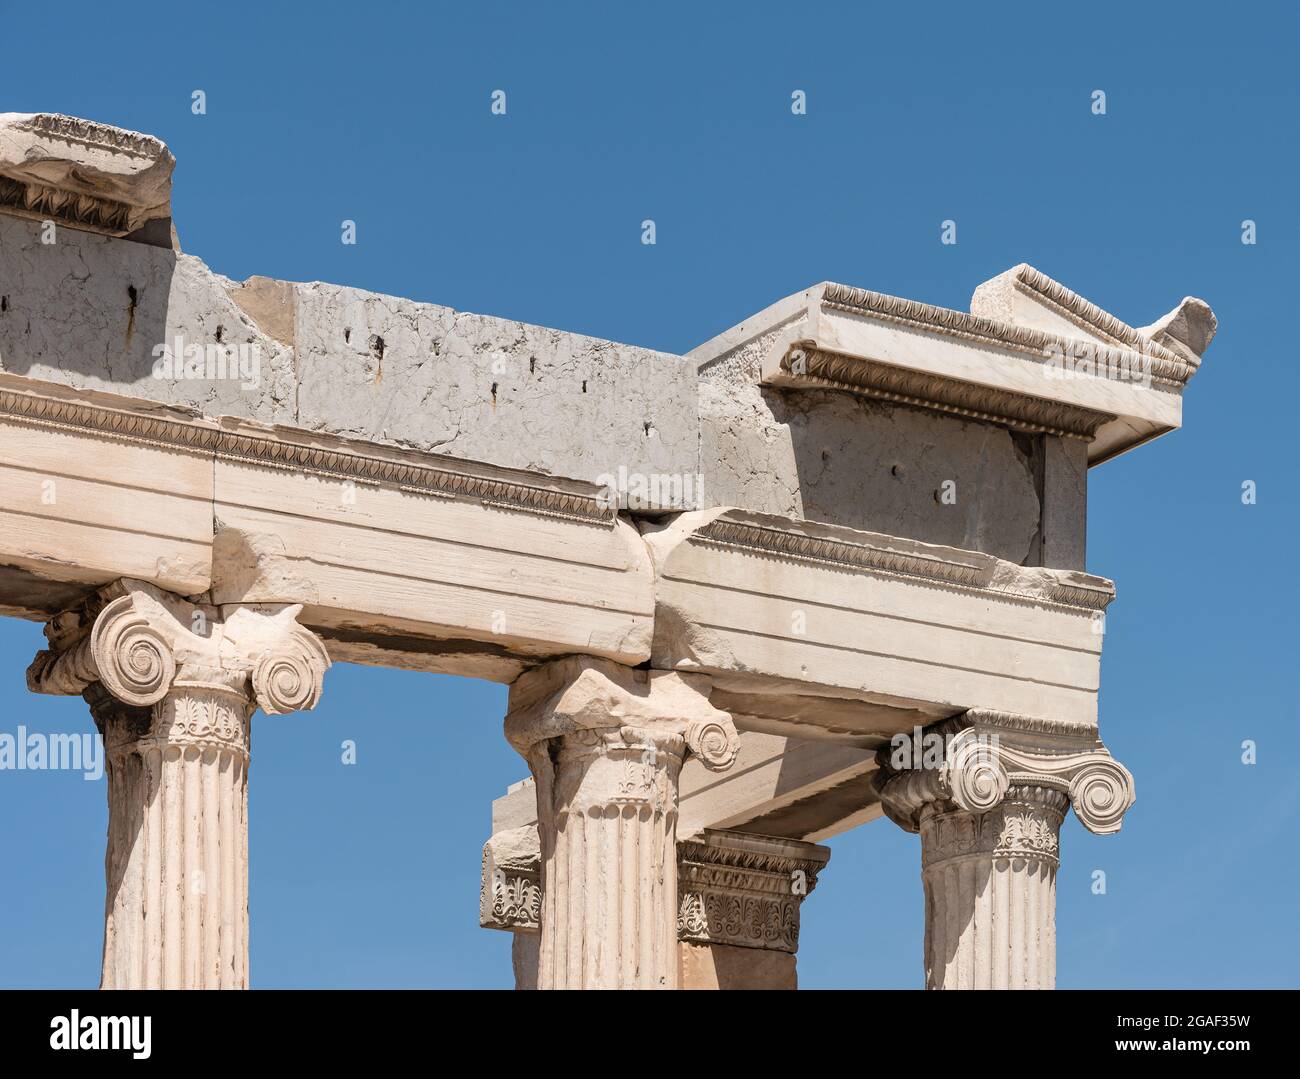 Particolare di colonne ioniche e fregio, classica architettura greca dell'Acropoli, Atene. Foto Stock